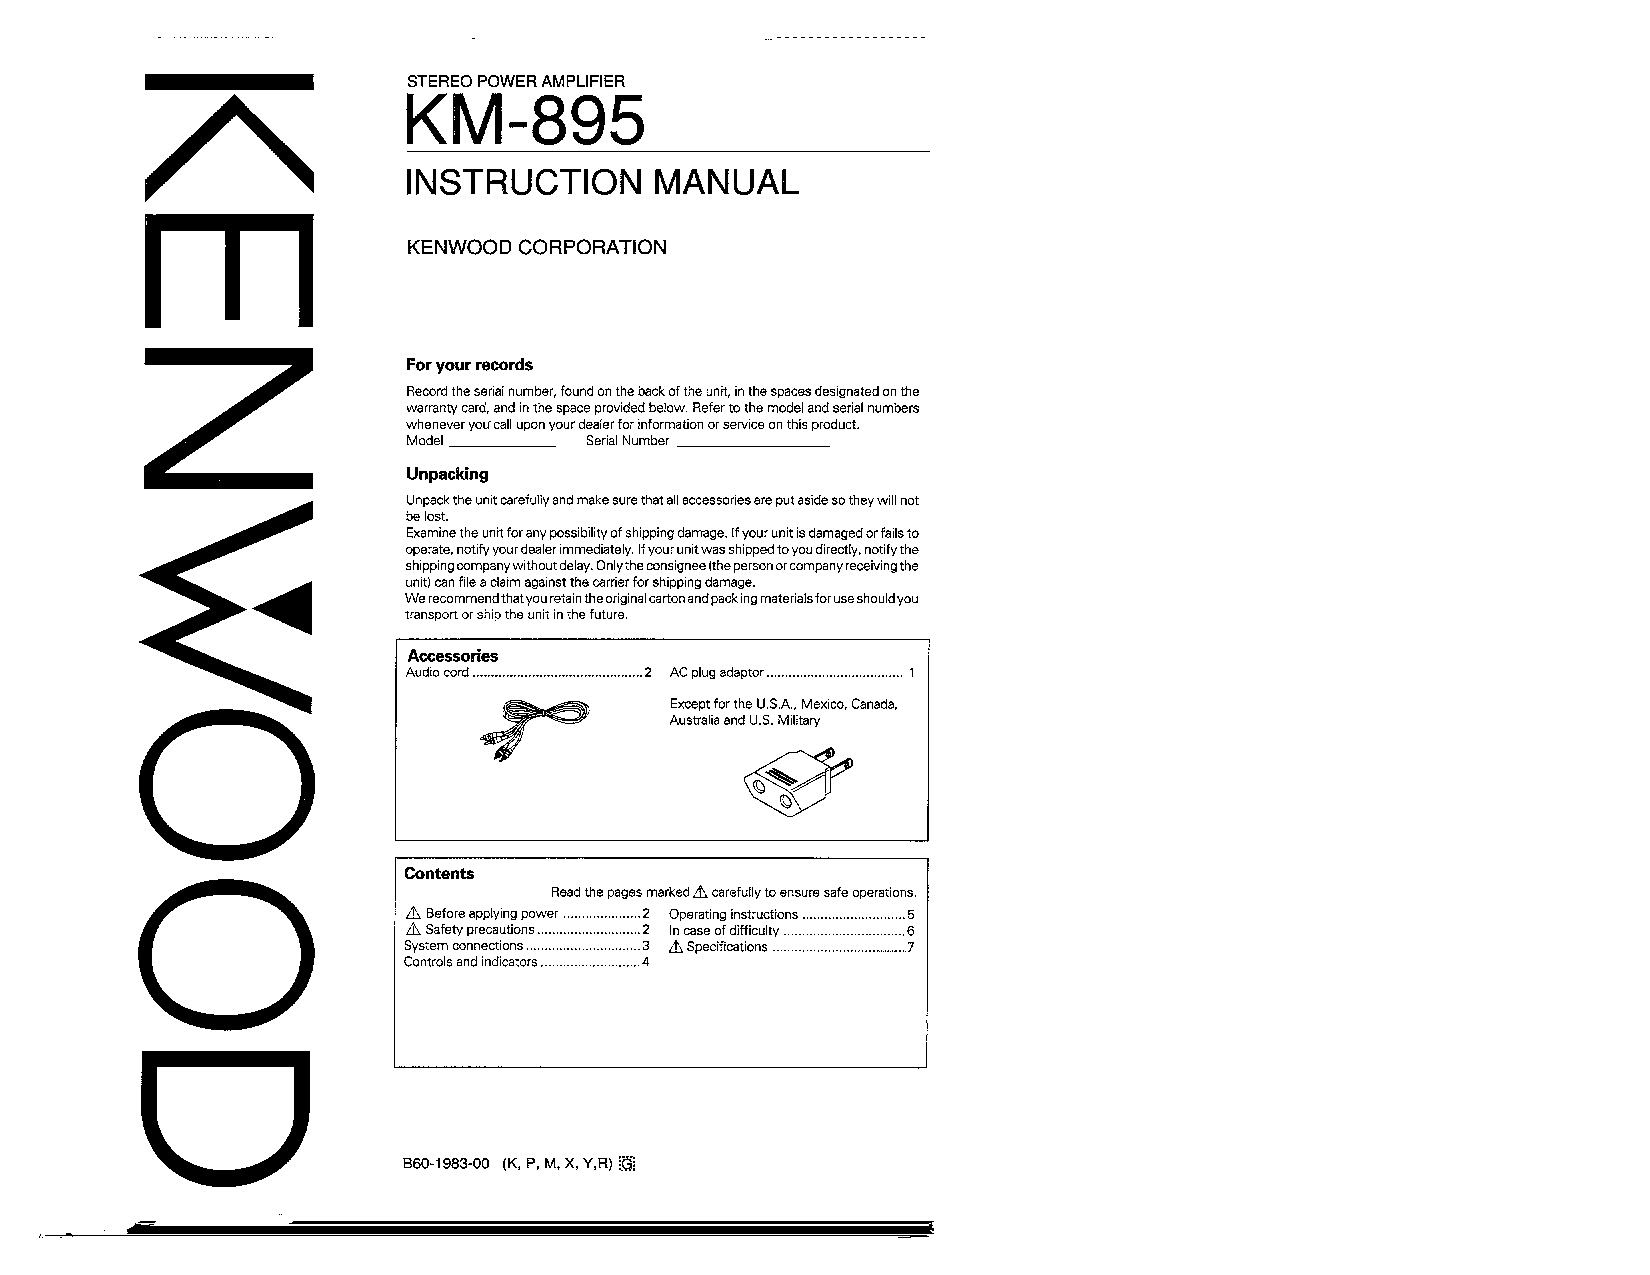 Kenwood KM-895 User Manual